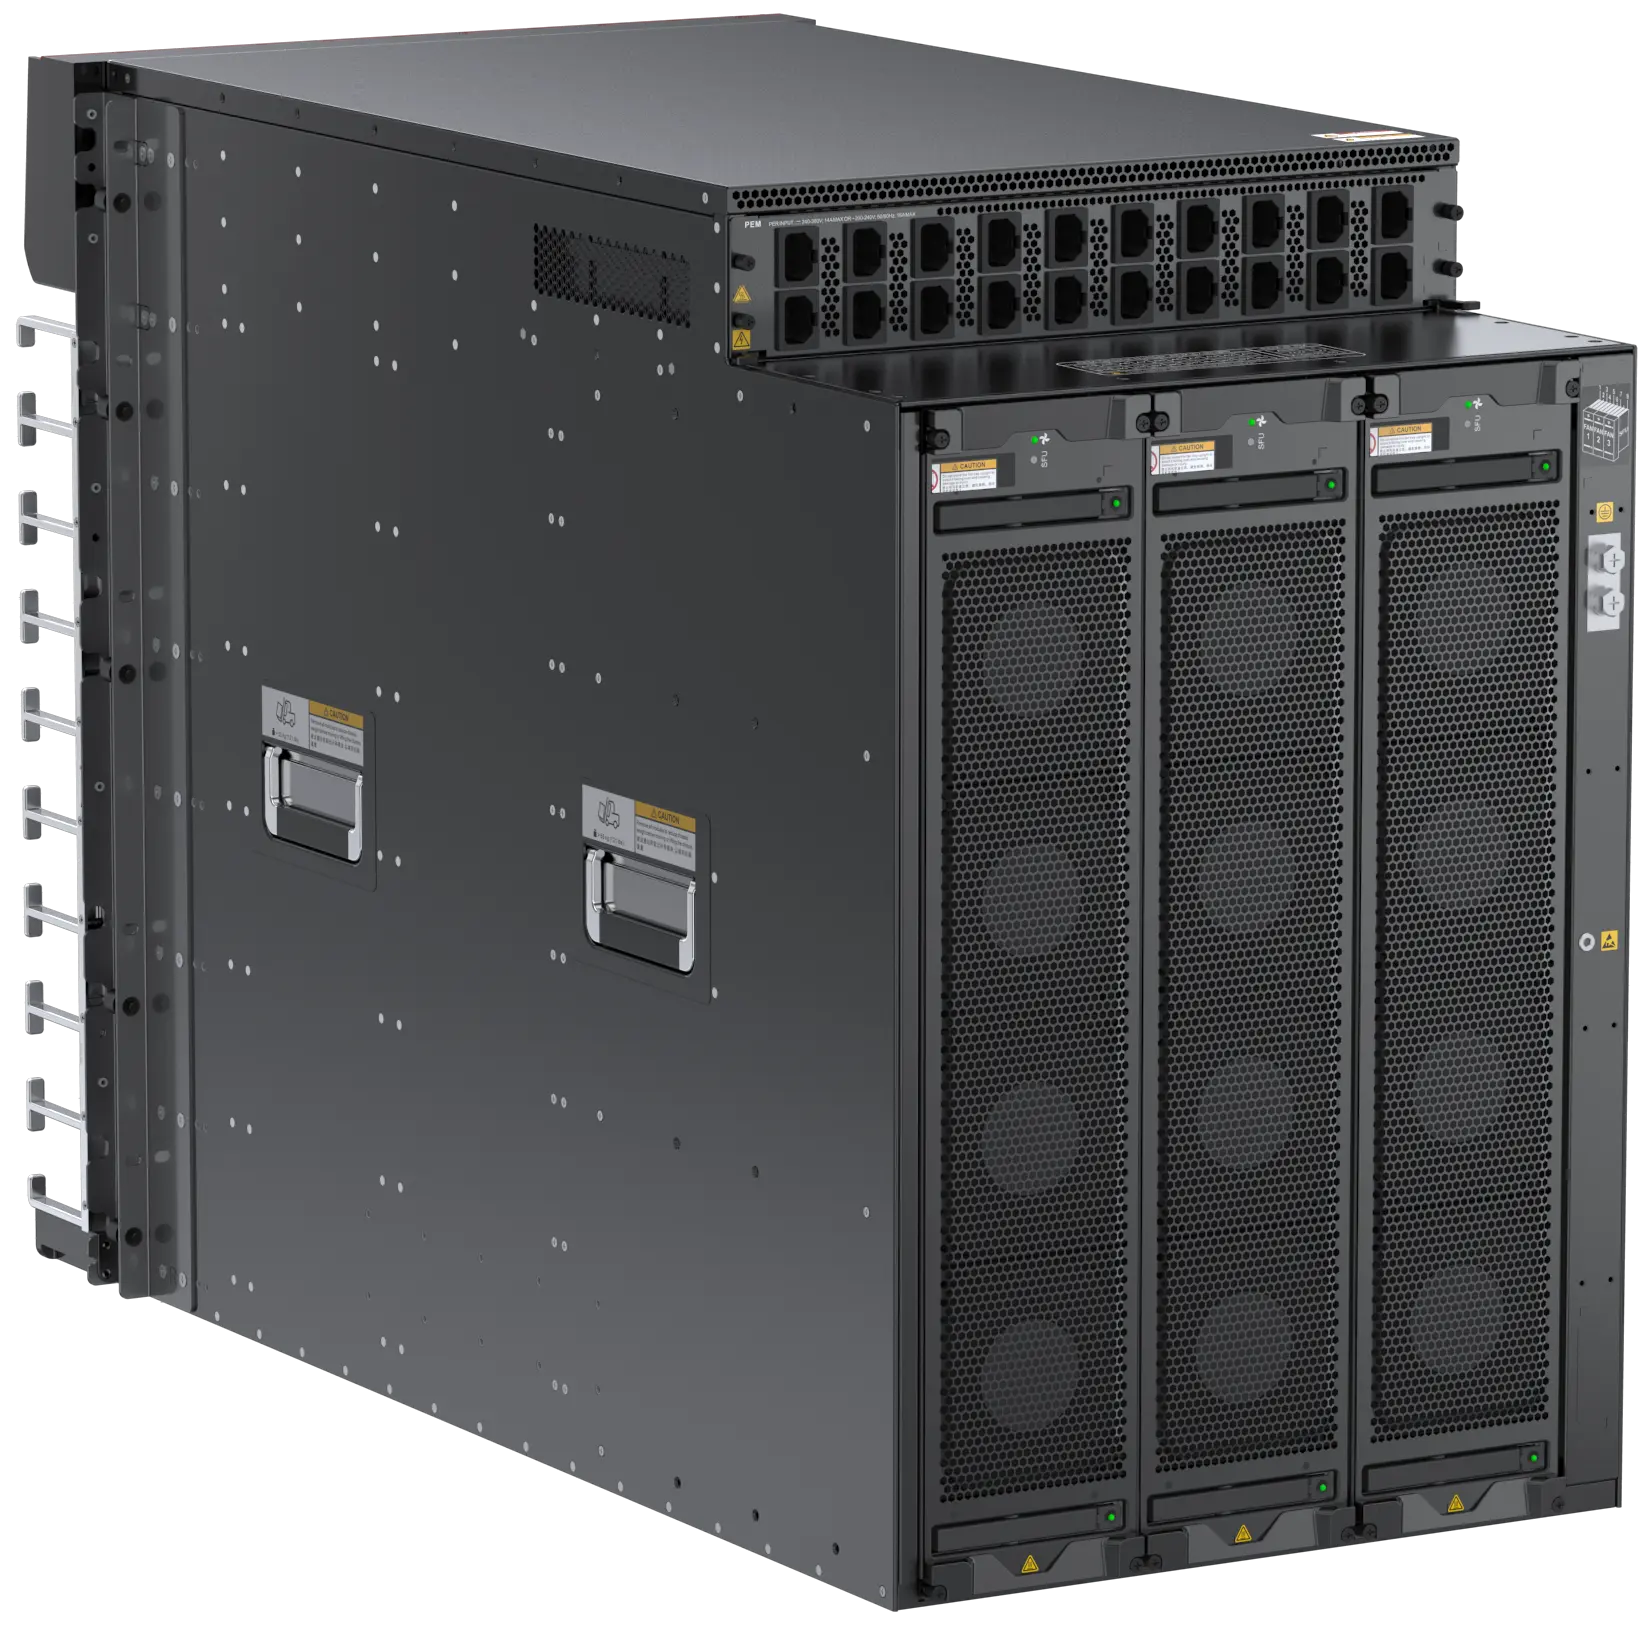 Enrutador central empresarial NetEngine 8000 X8, gran ancho de banda, centro de datos